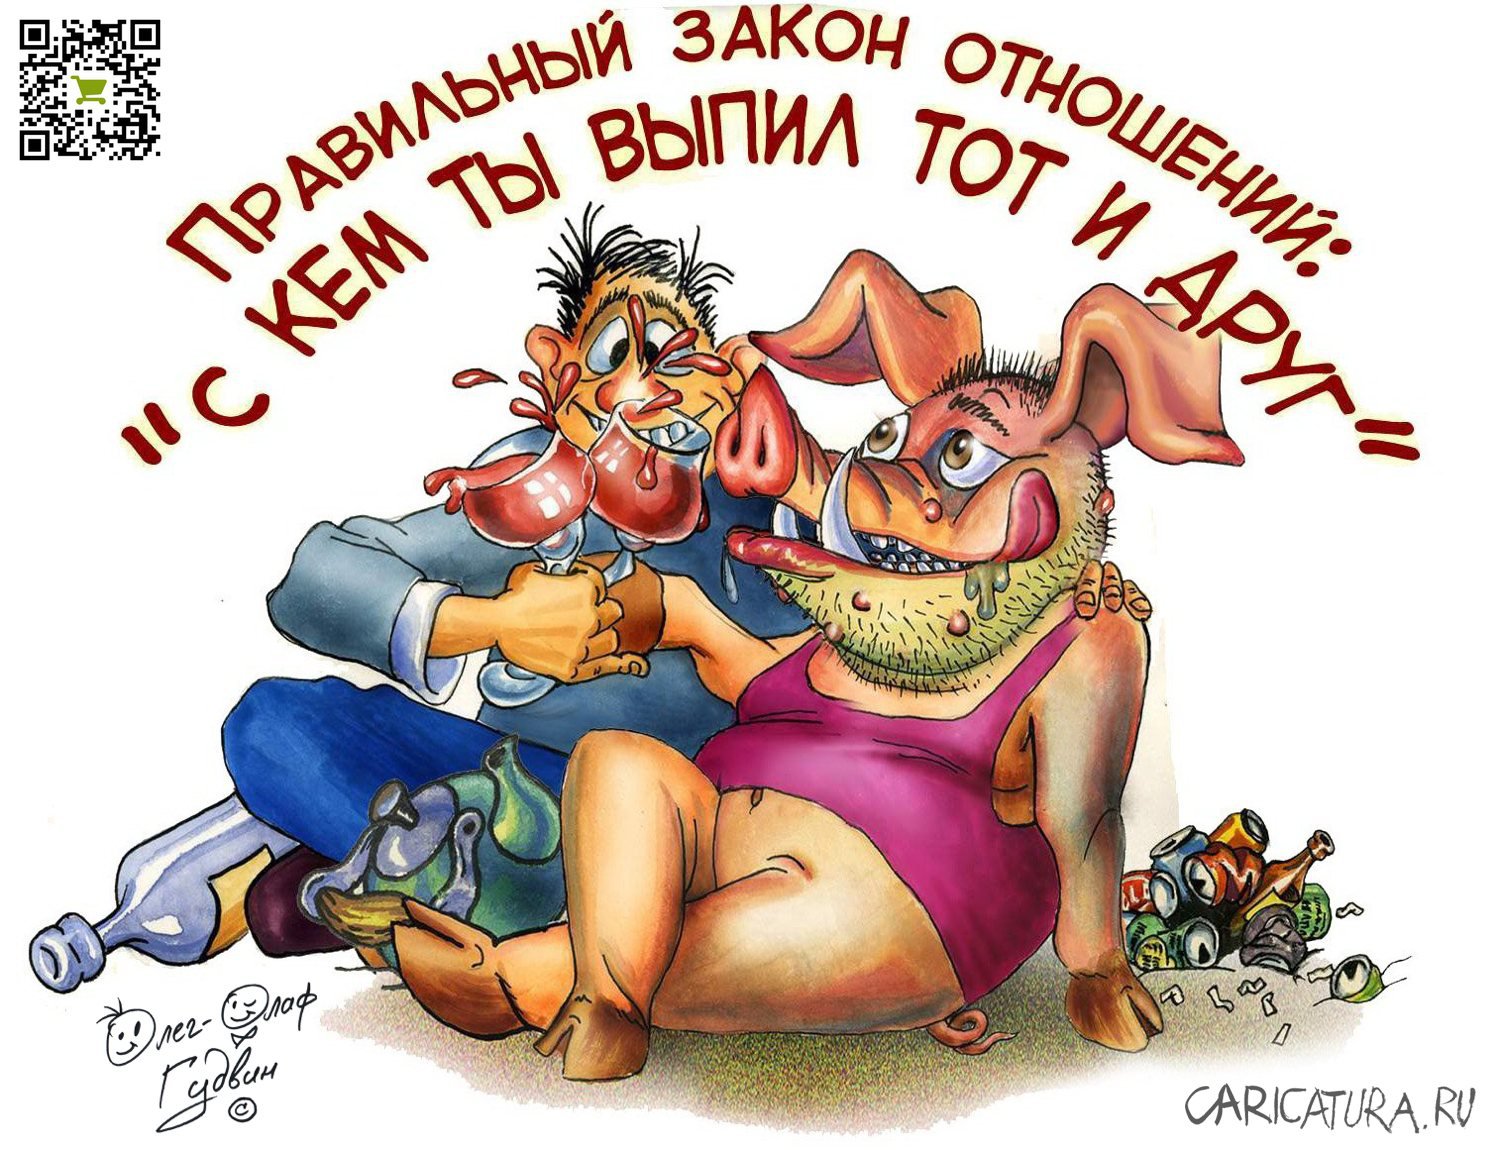 Карикатура "С кем ты выпил тот и друг!", Олег-Олаф Гудвин